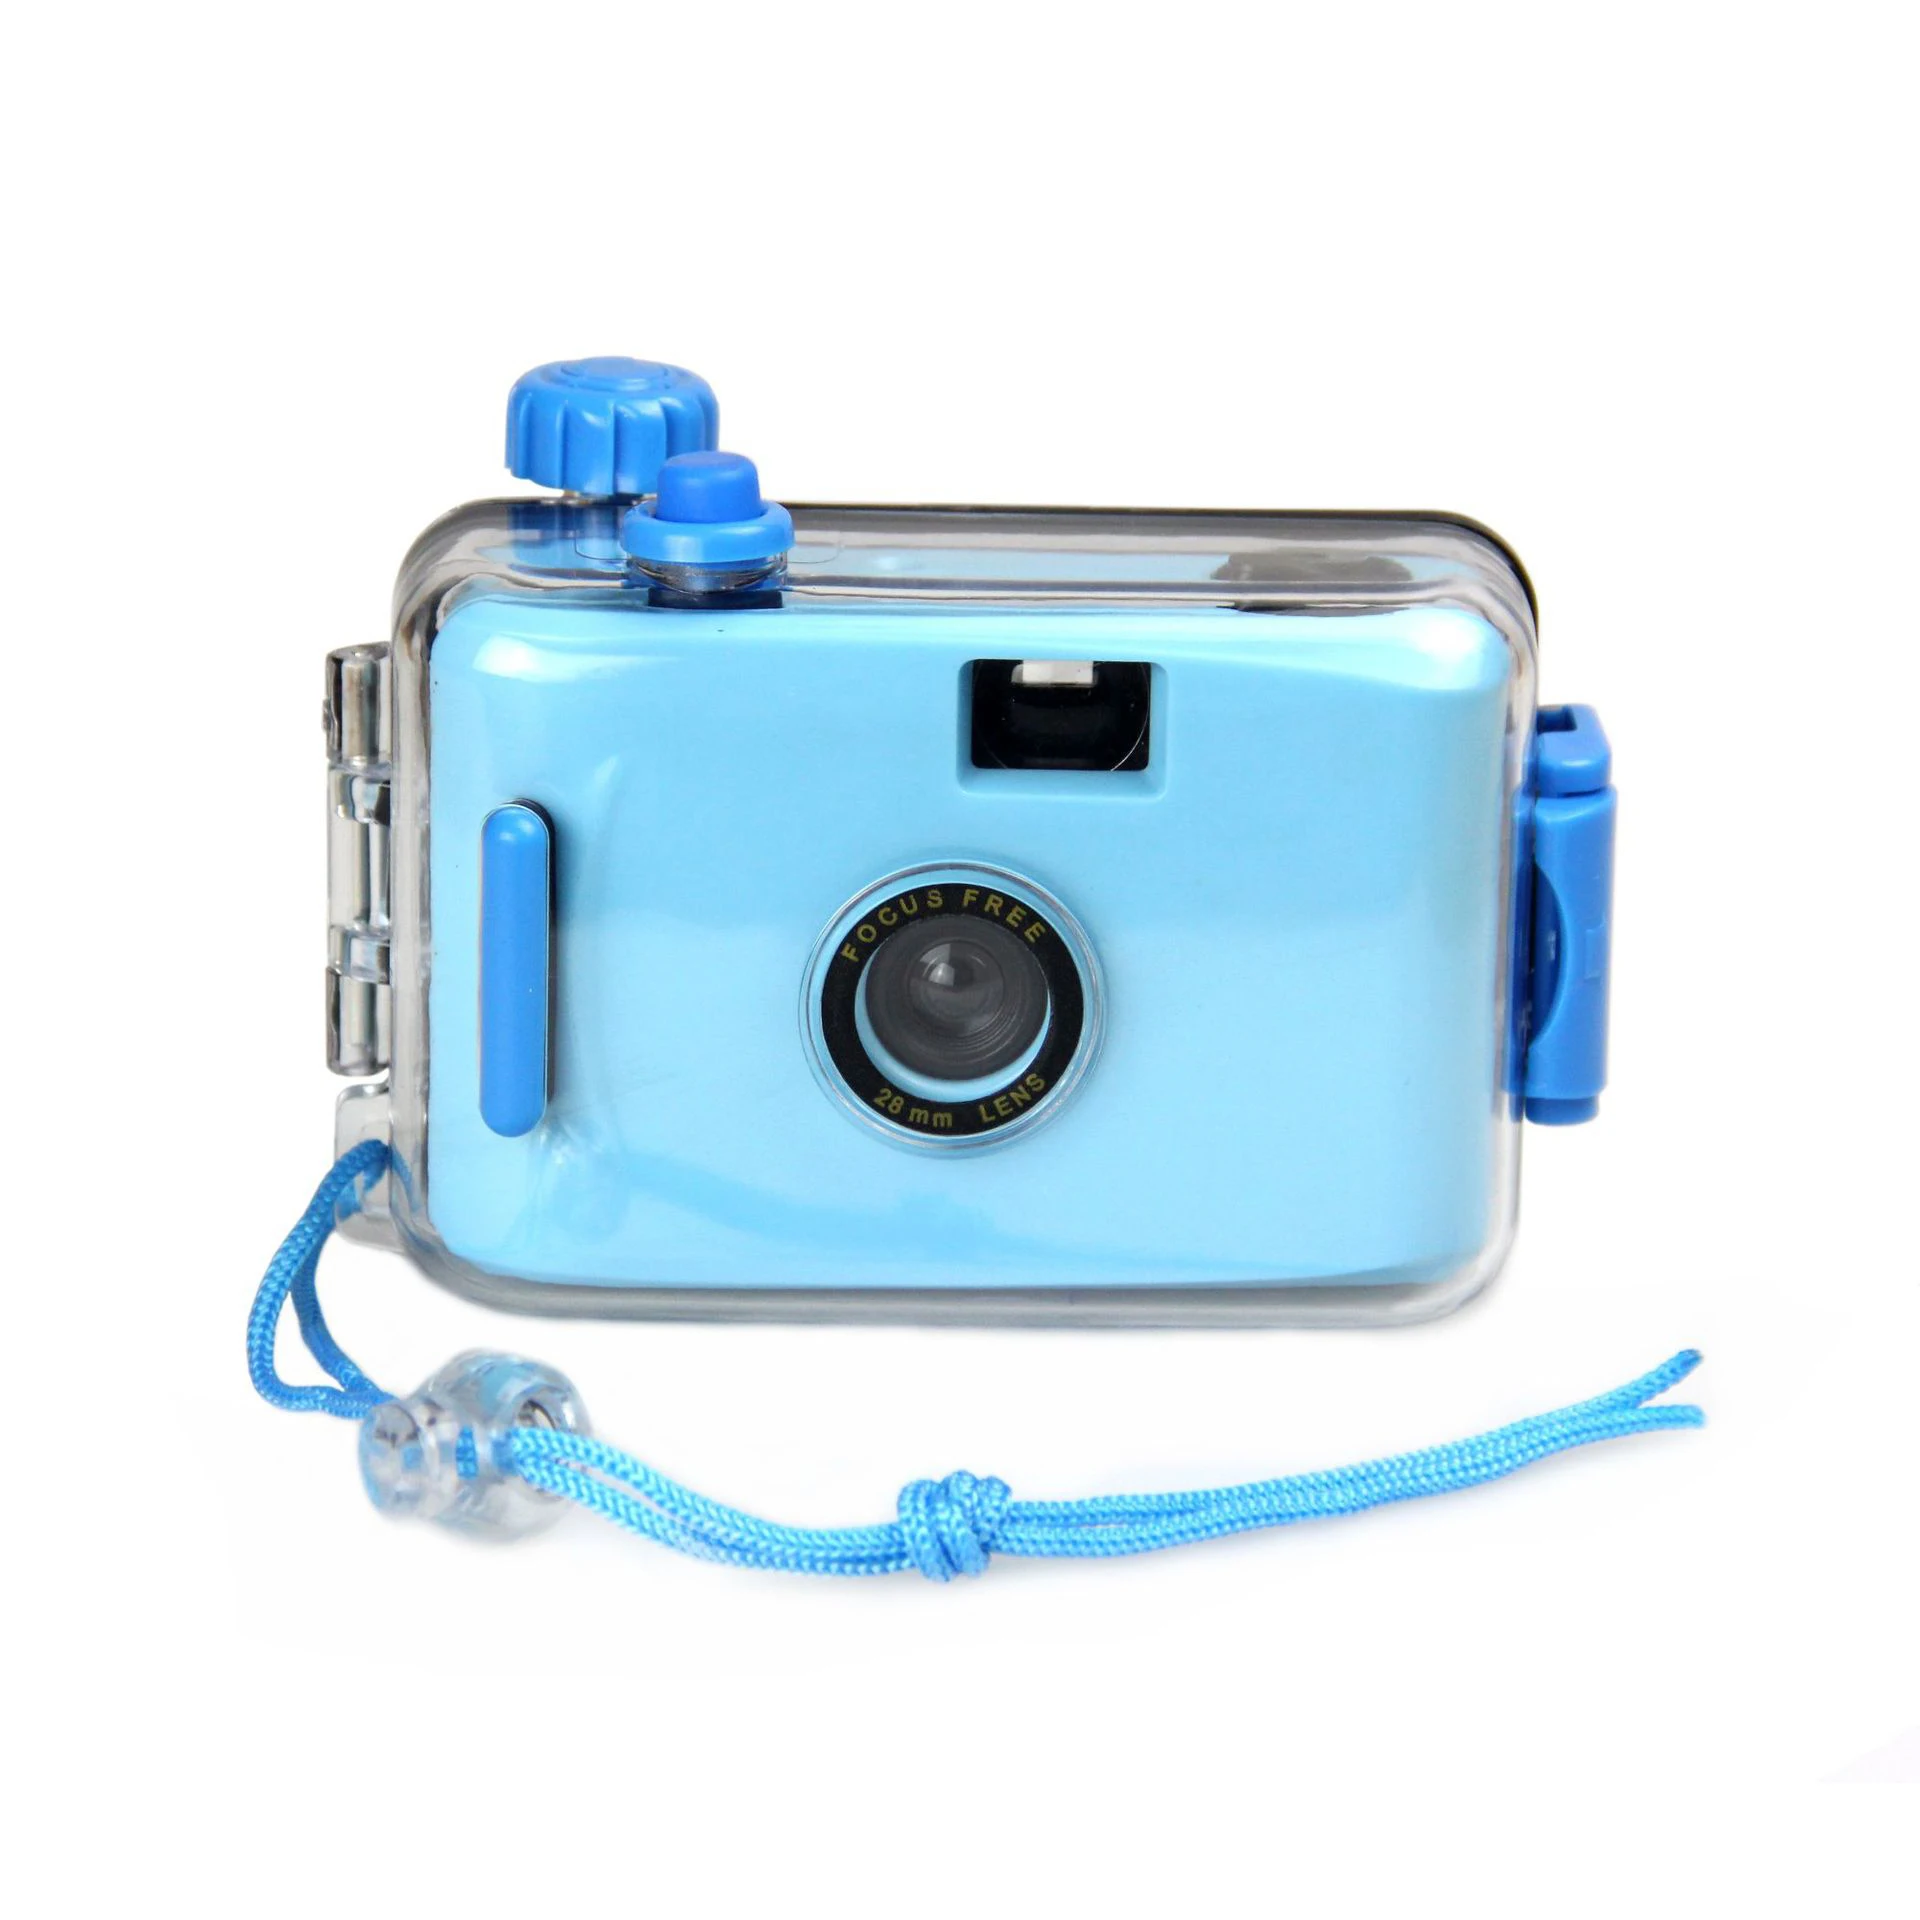 
35mm Plastic Film Aqua Pix Underwater Lomo Camera 